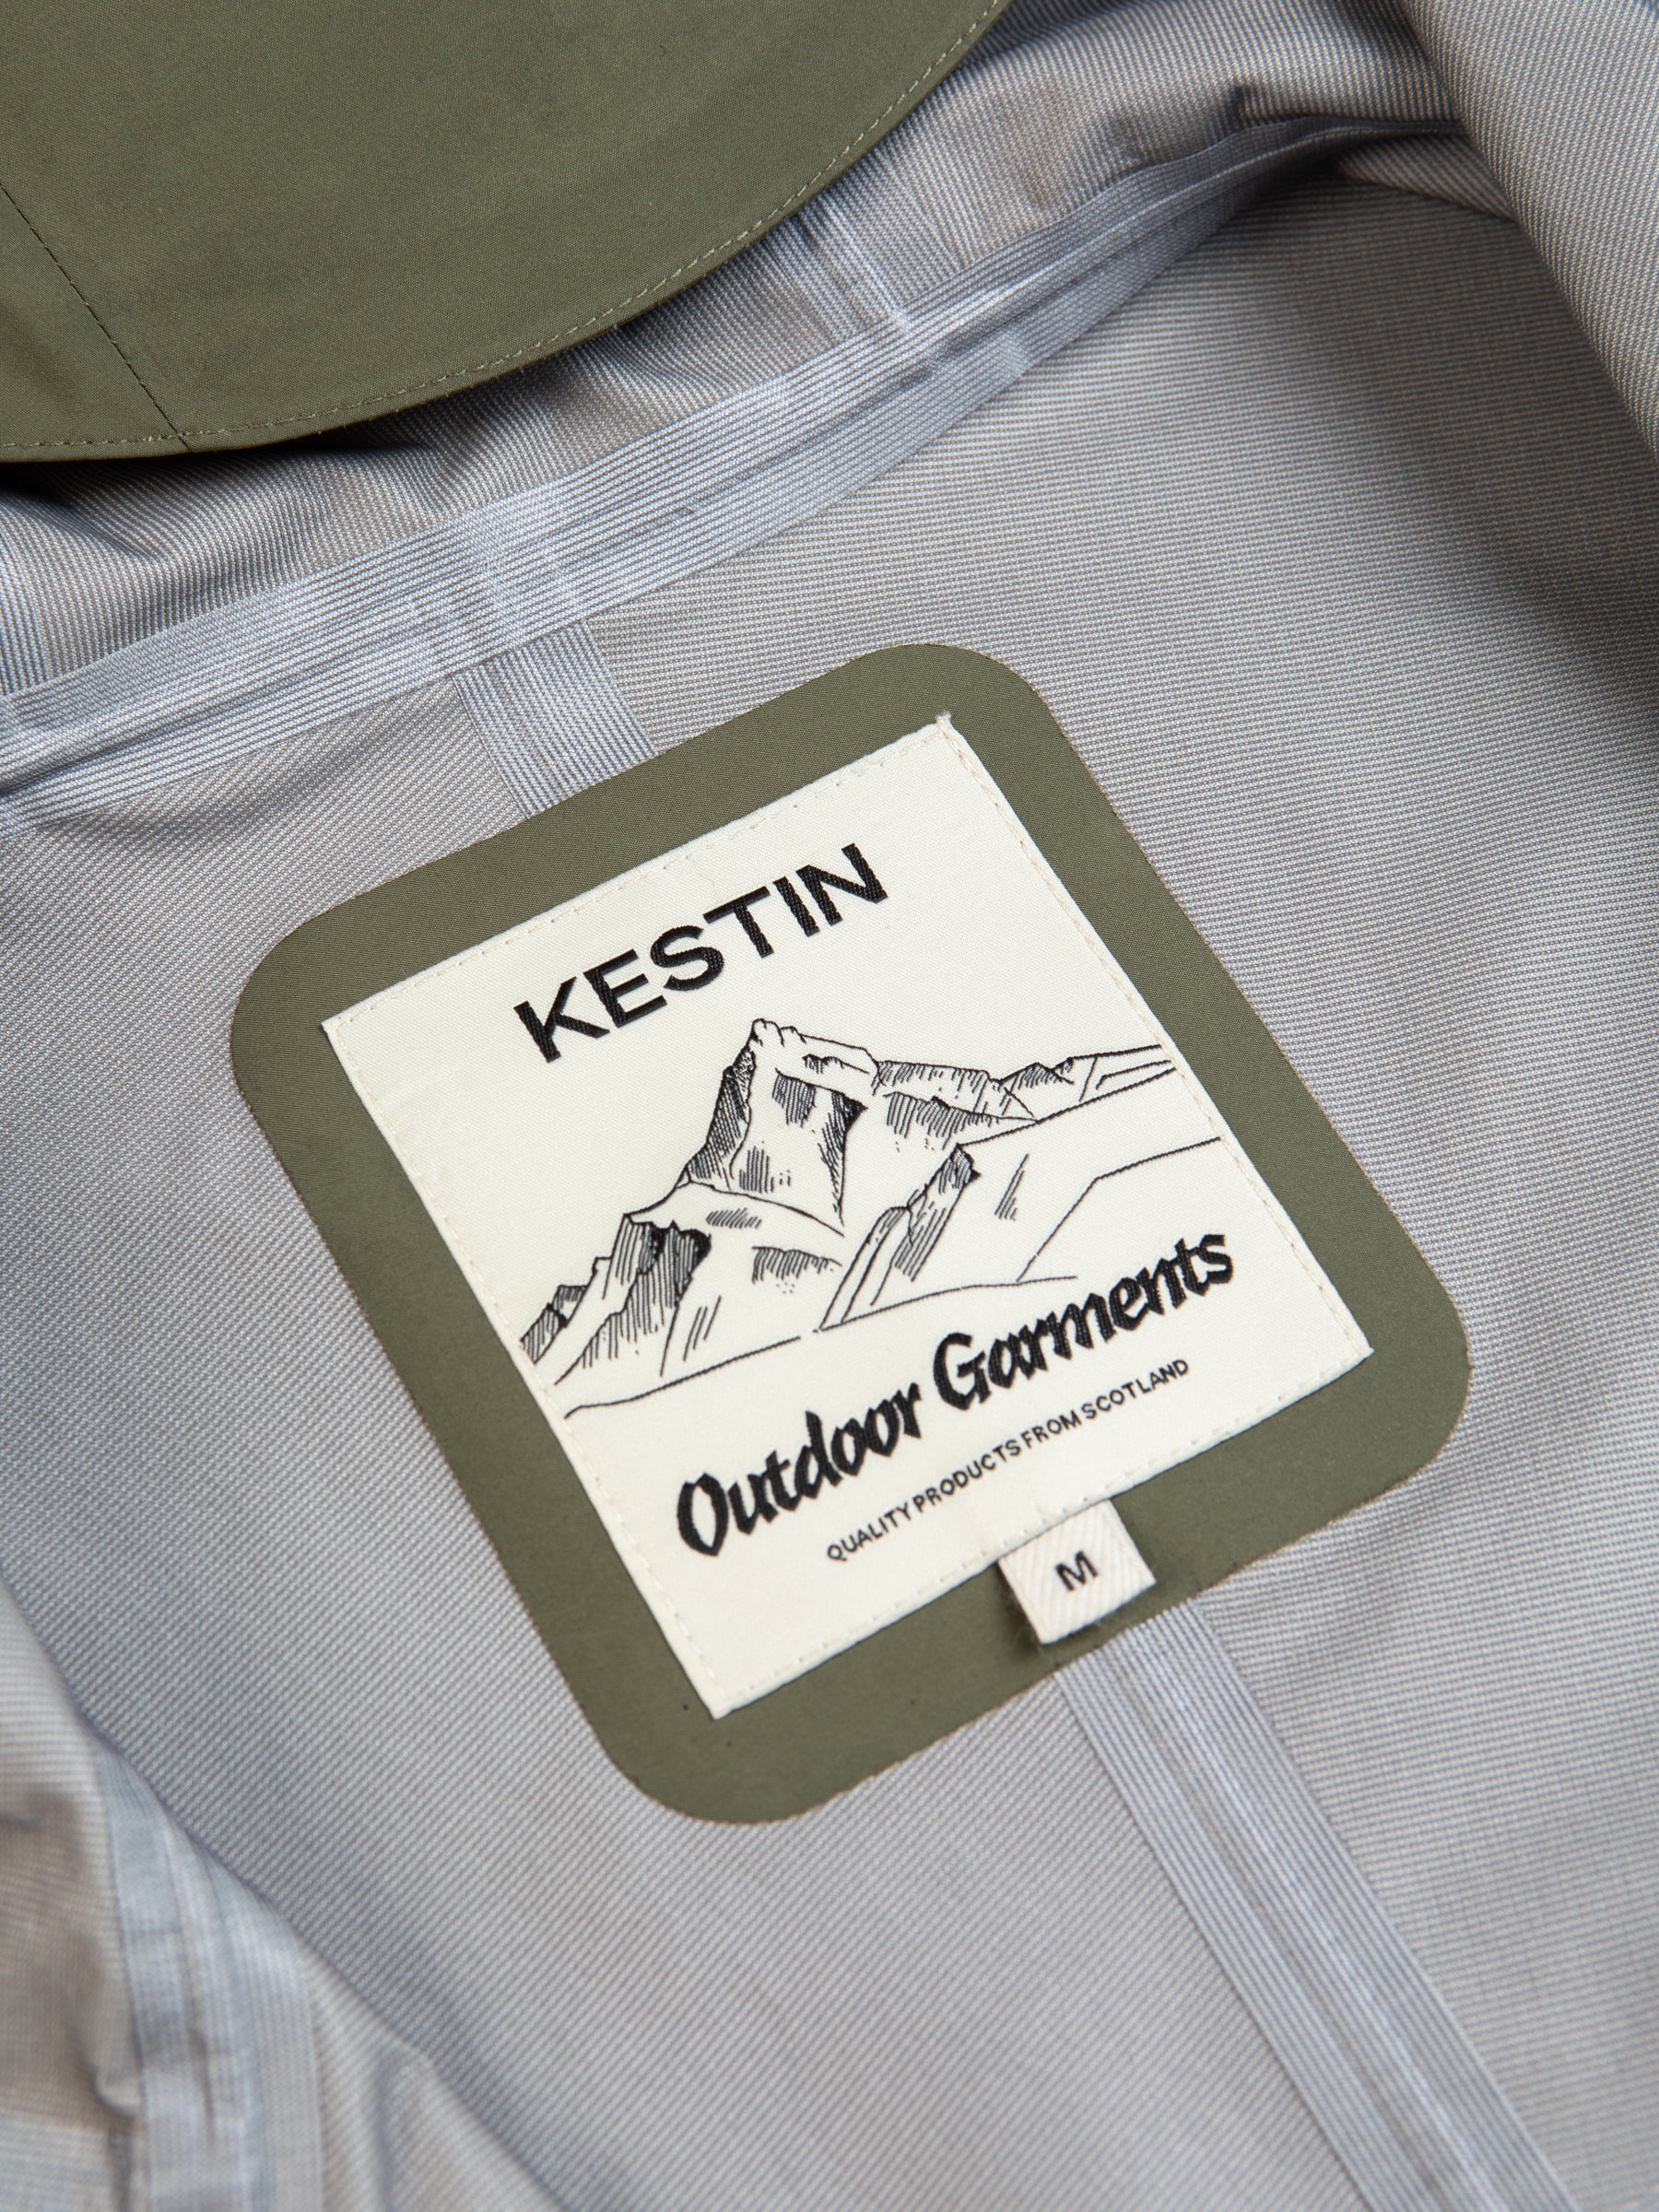 A KESTIN Outdoor Garments logo patch on a men's waterproof jacket.